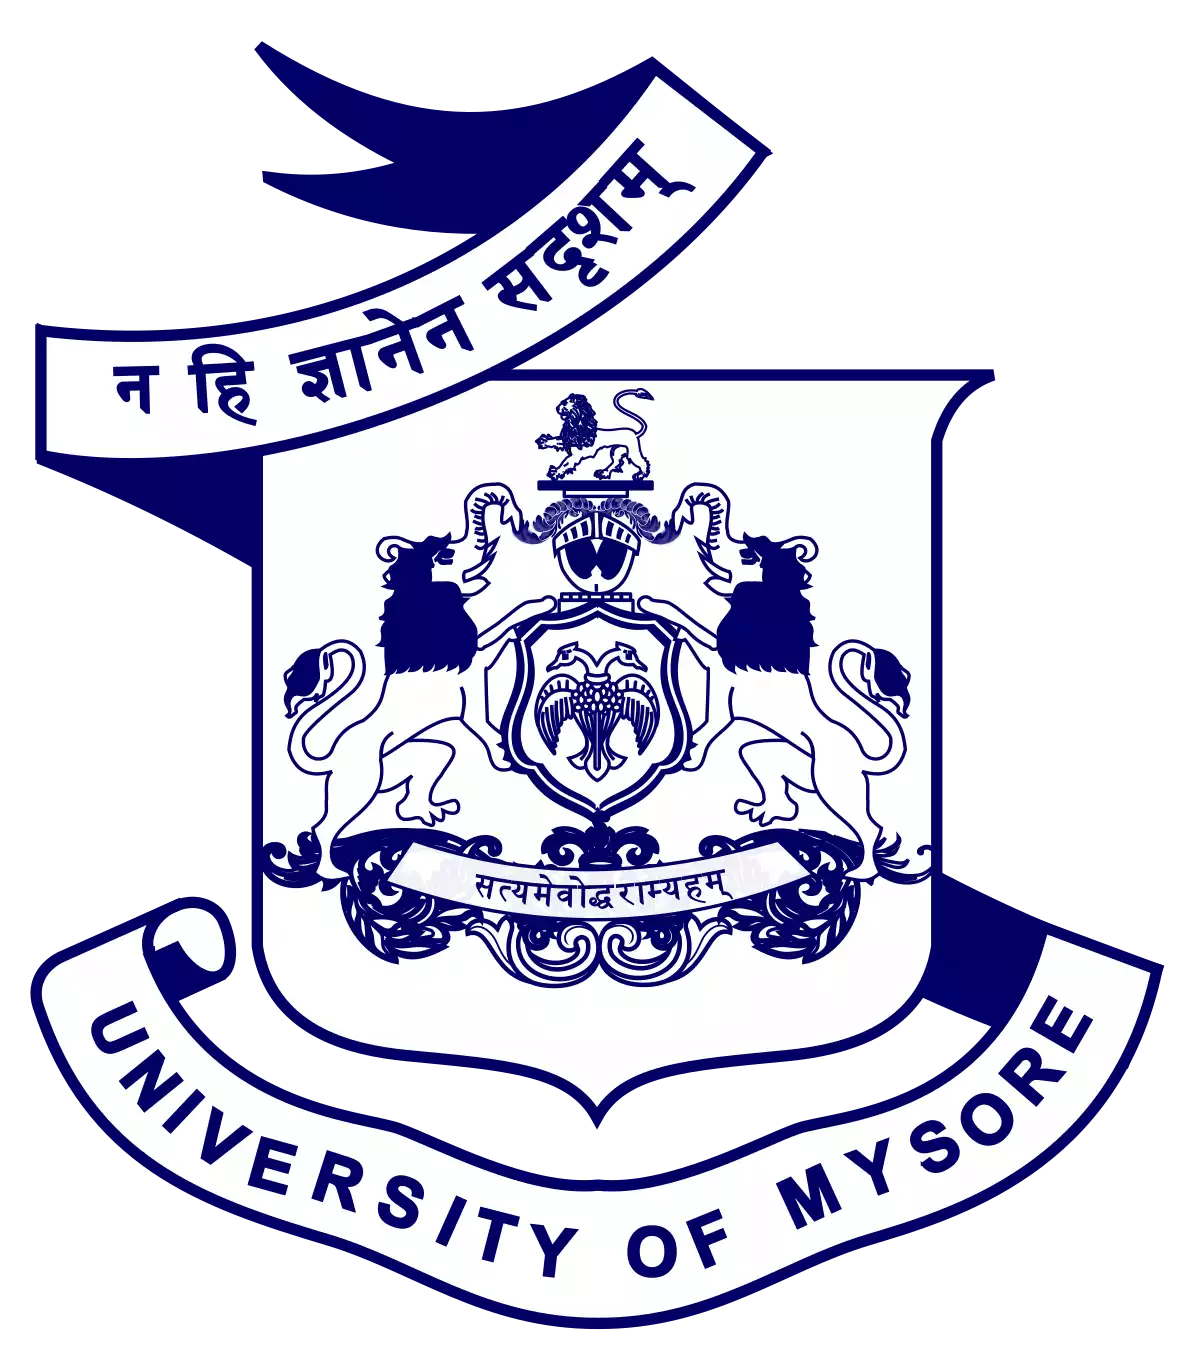 University of Mysore (UoM)